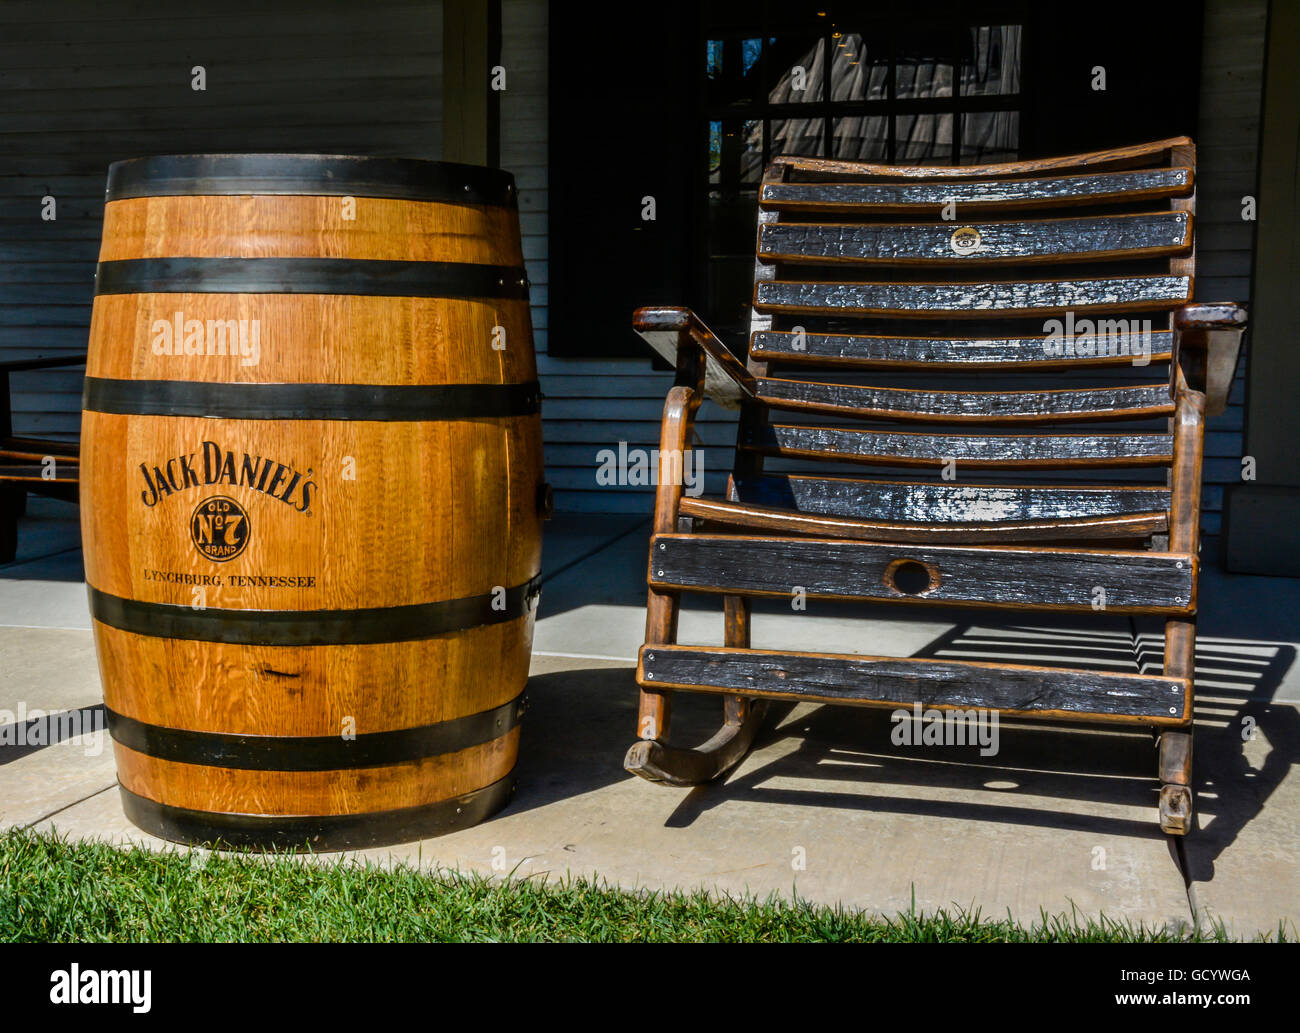 Legno nero stile tornio sedia a dondolo sul portico lungo il lato di un autentica botte di rovere di Jack Daniel's n. 7 Whiskey, Lynchburg, TN Foto Stock